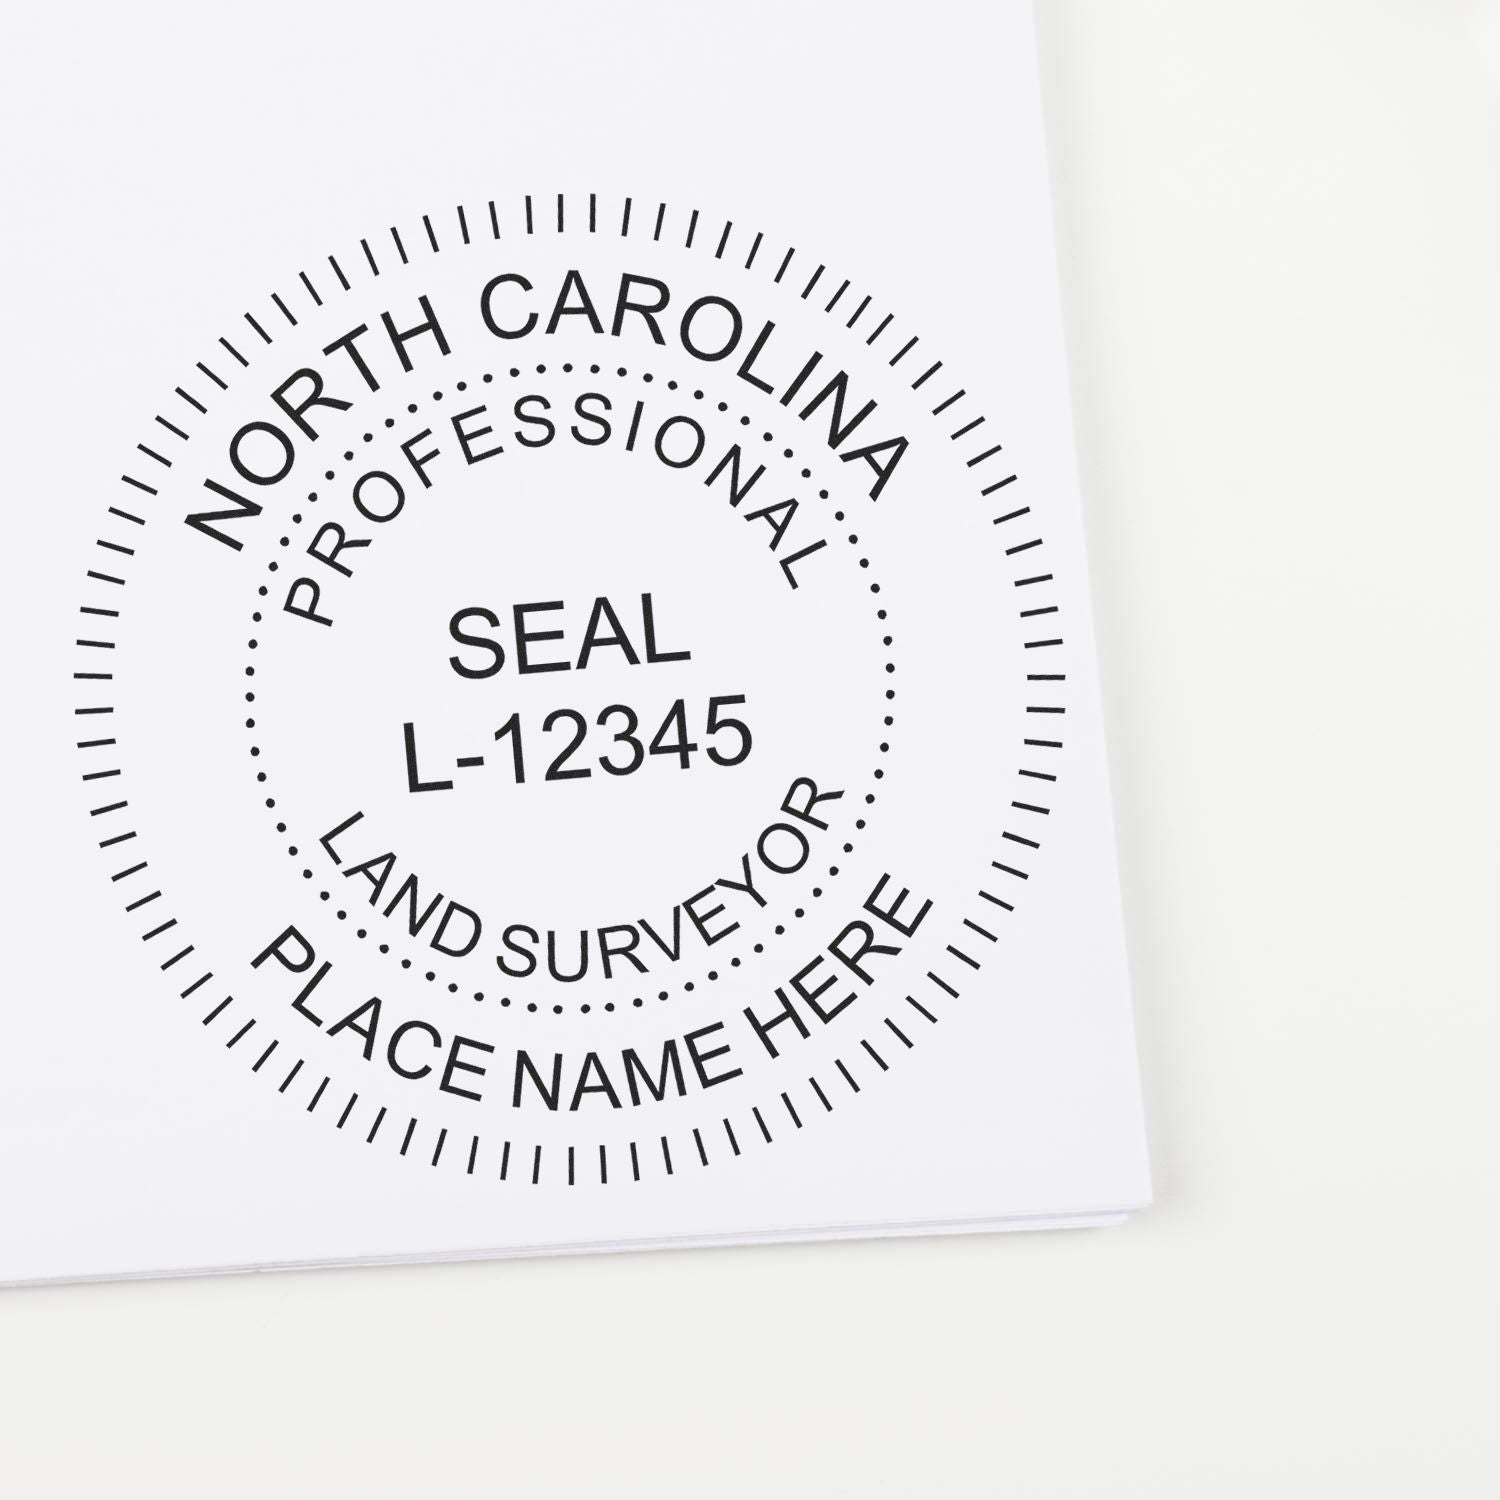 Land Surveyor Regular Rubber Stamp of Seal